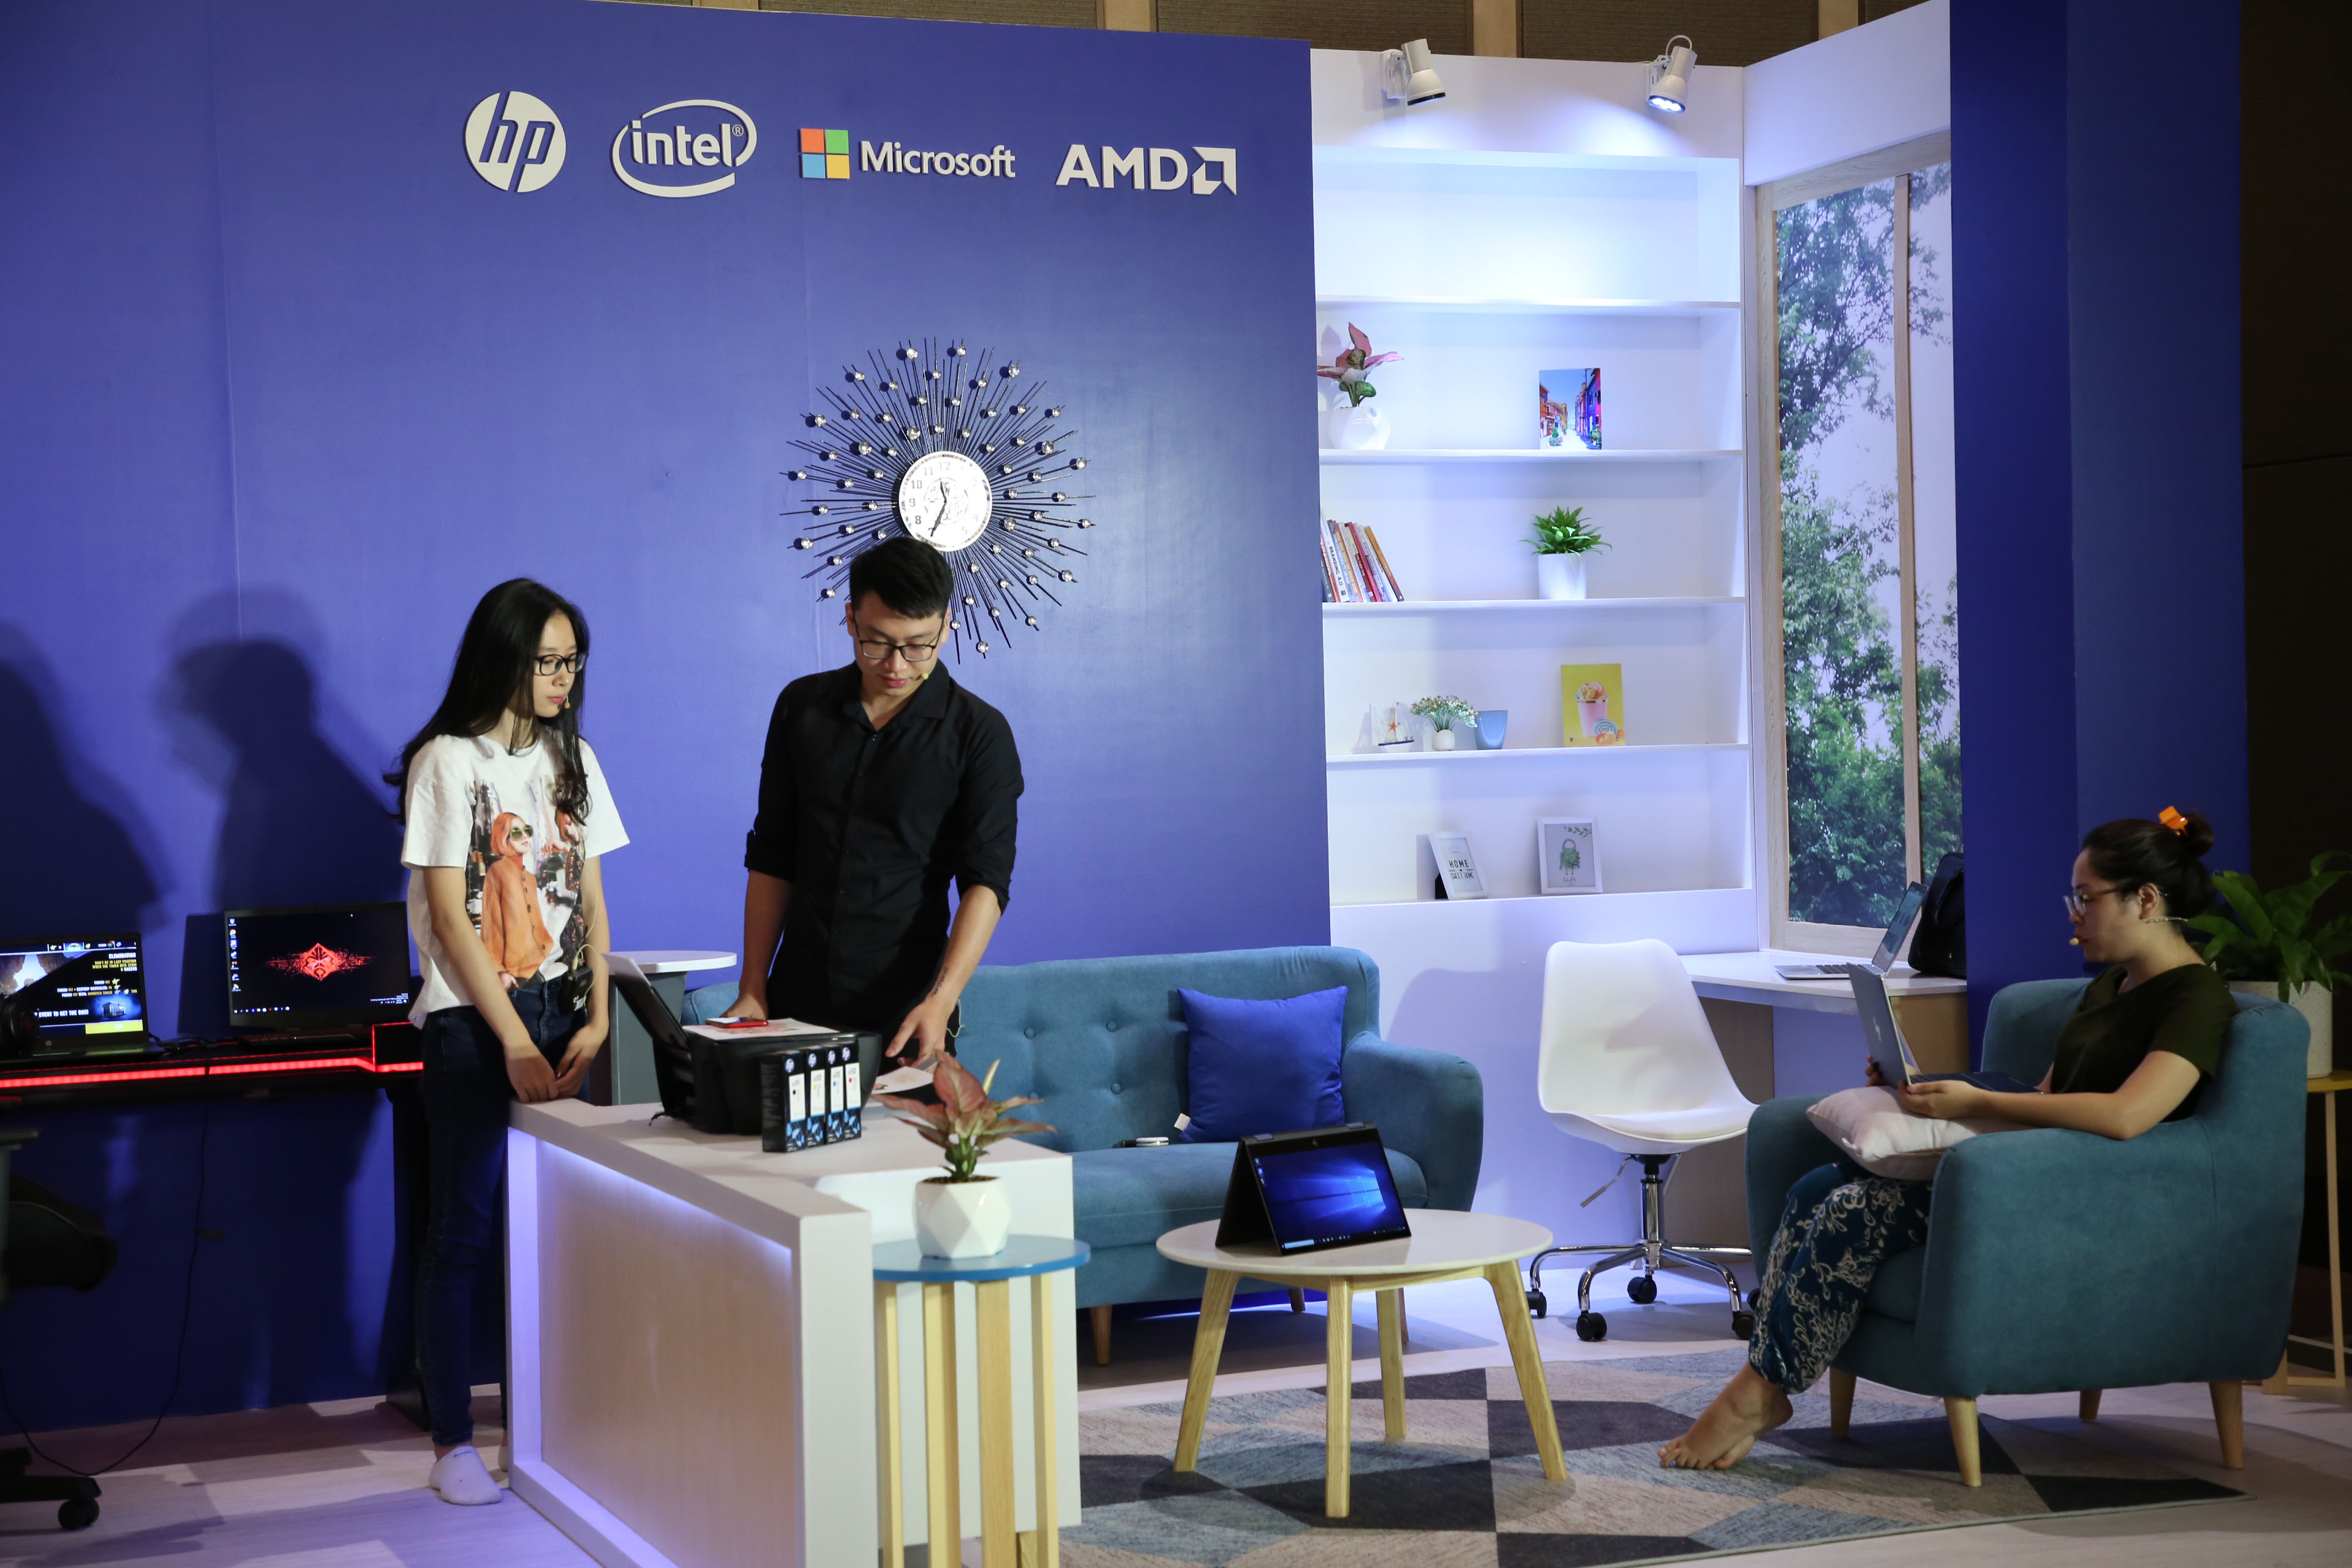 HP nỗ lực cùng Việt Nam nắm bắt làn sóng công nghiệp 4.0